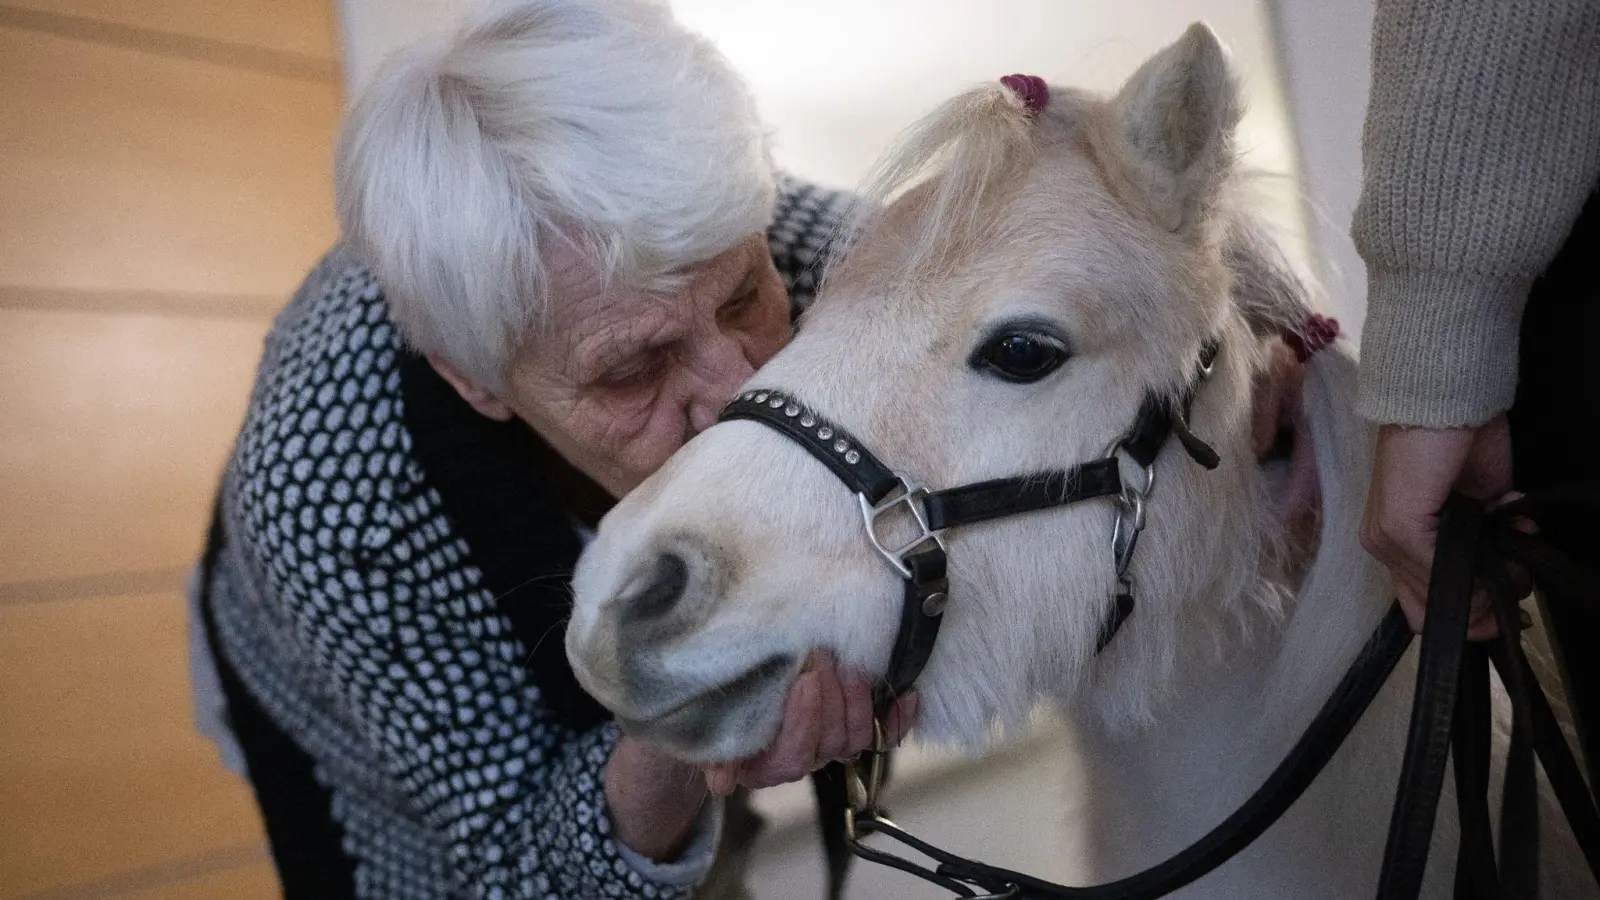 Der Besuch der Ponys im Altenheim bringt Abwechslung für die Bewohnerinnen und Bewohner. (Foto: Sebastian Gollnow/dpa)